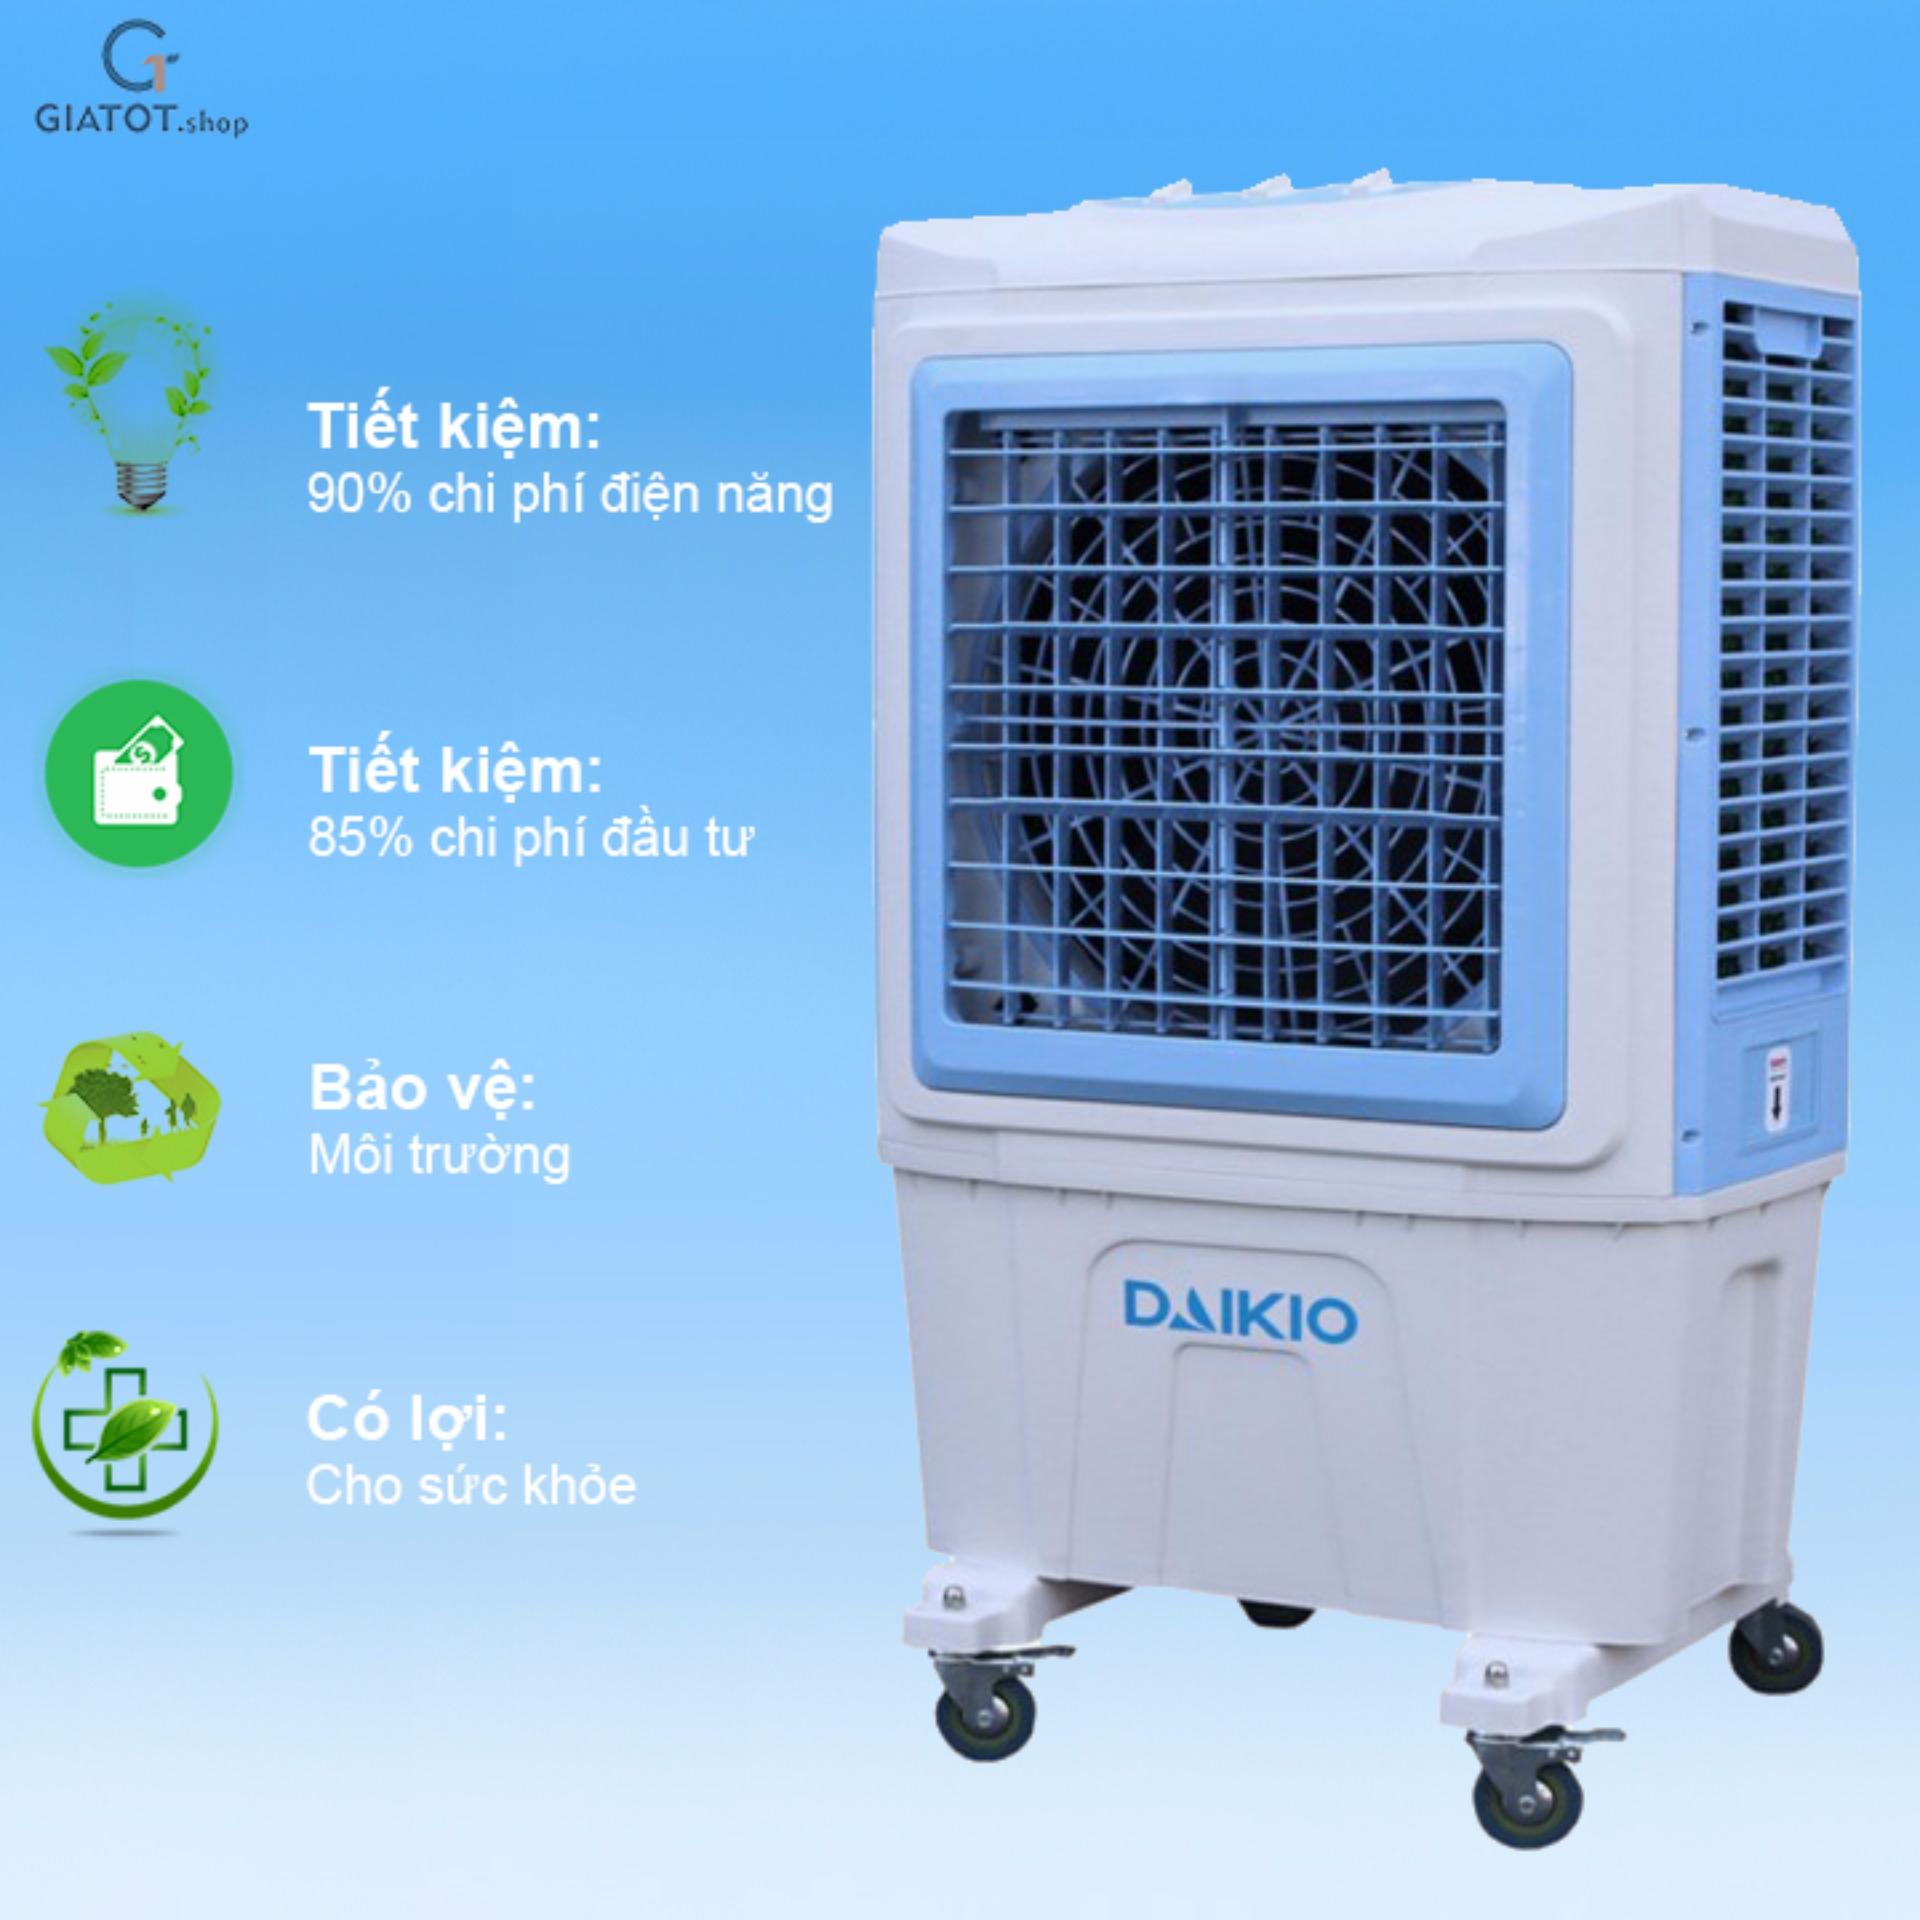 Máy làm mát không khí Daikio DKA - 05000C cao cấp